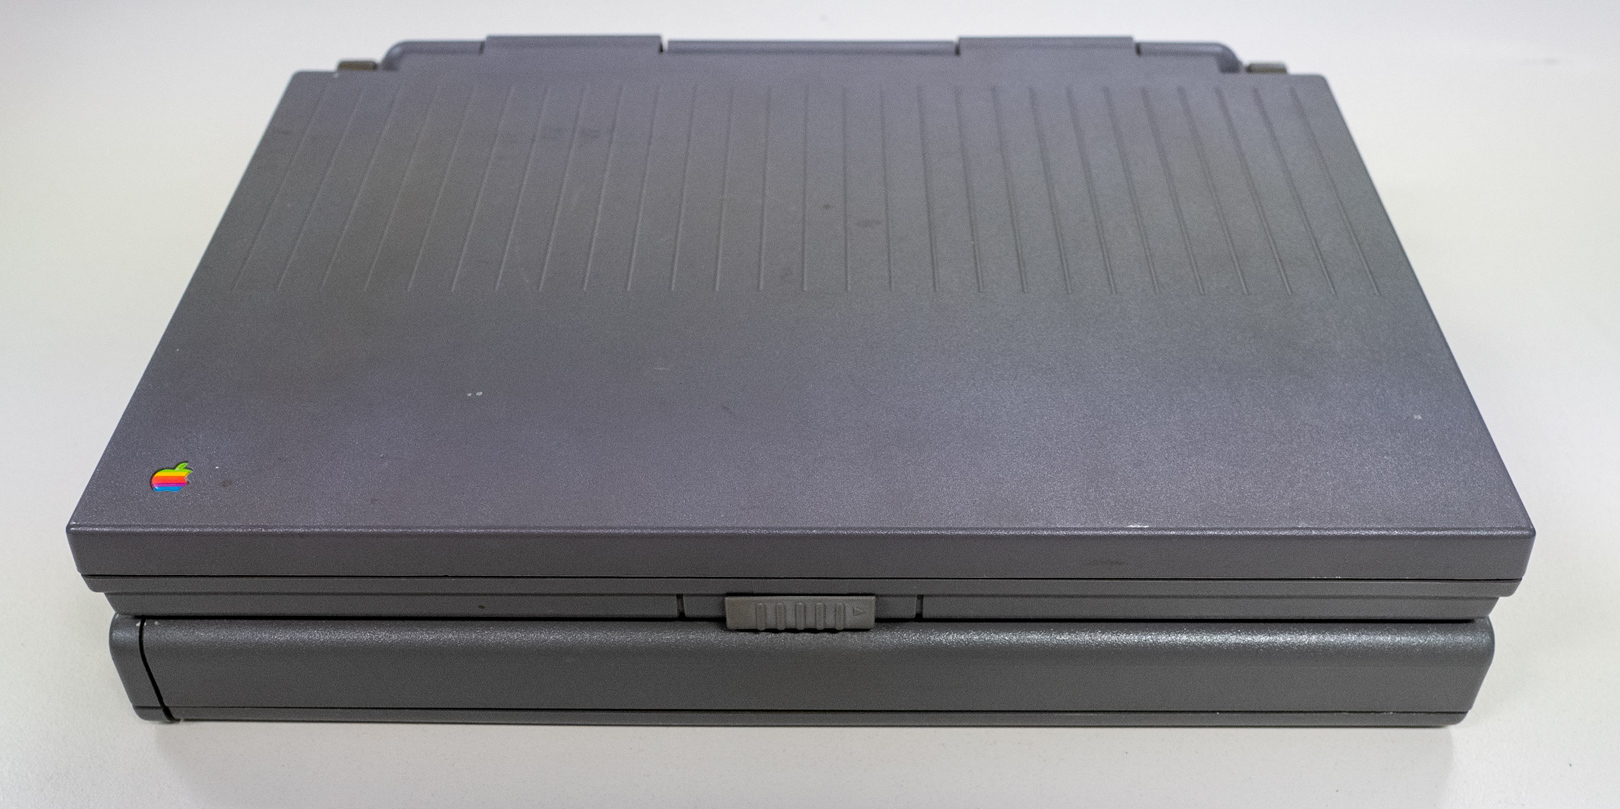 Das PowerBook ist ein tragbares Macintosh-Notebook von Apple.

Nachdem der erste Macintosh Portable von 1989 noch sehr schwer im Vergleich zu tragbaren DOS-Rechnern war, brachte Apple 1991 das erste Macintosh-PowerBook auf den Markt.